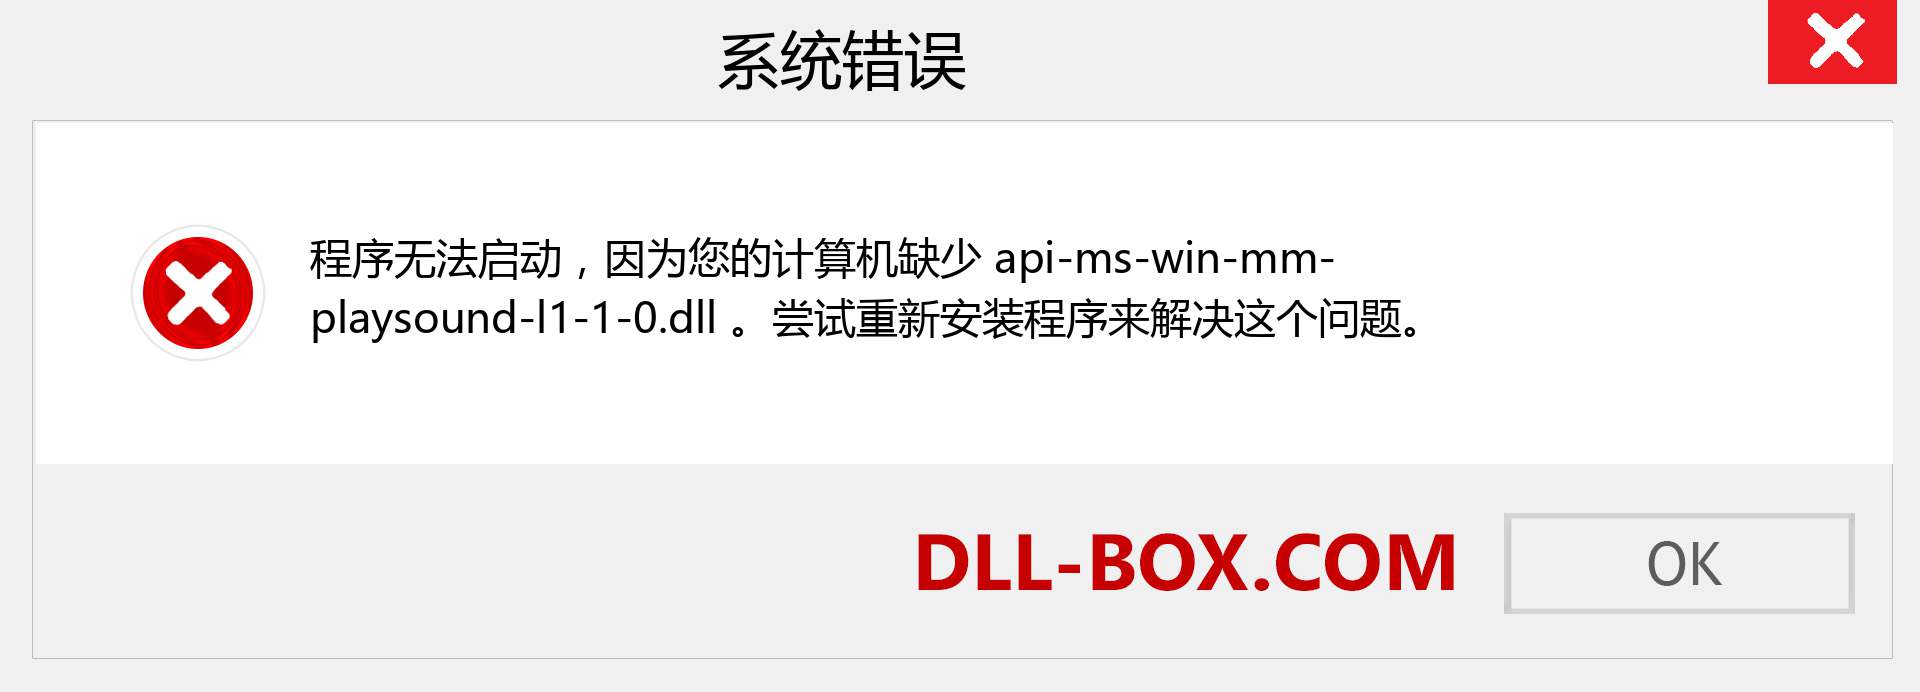 api-ms-win-mm-playsound-l1-1-0.dll 文件丢失？。 适用于 Windows 7、8、10 的下载 - 修复 Windows、照片、图像上的 api-ms-win-mm-playsound-l1-1-0 dll 丢失错误